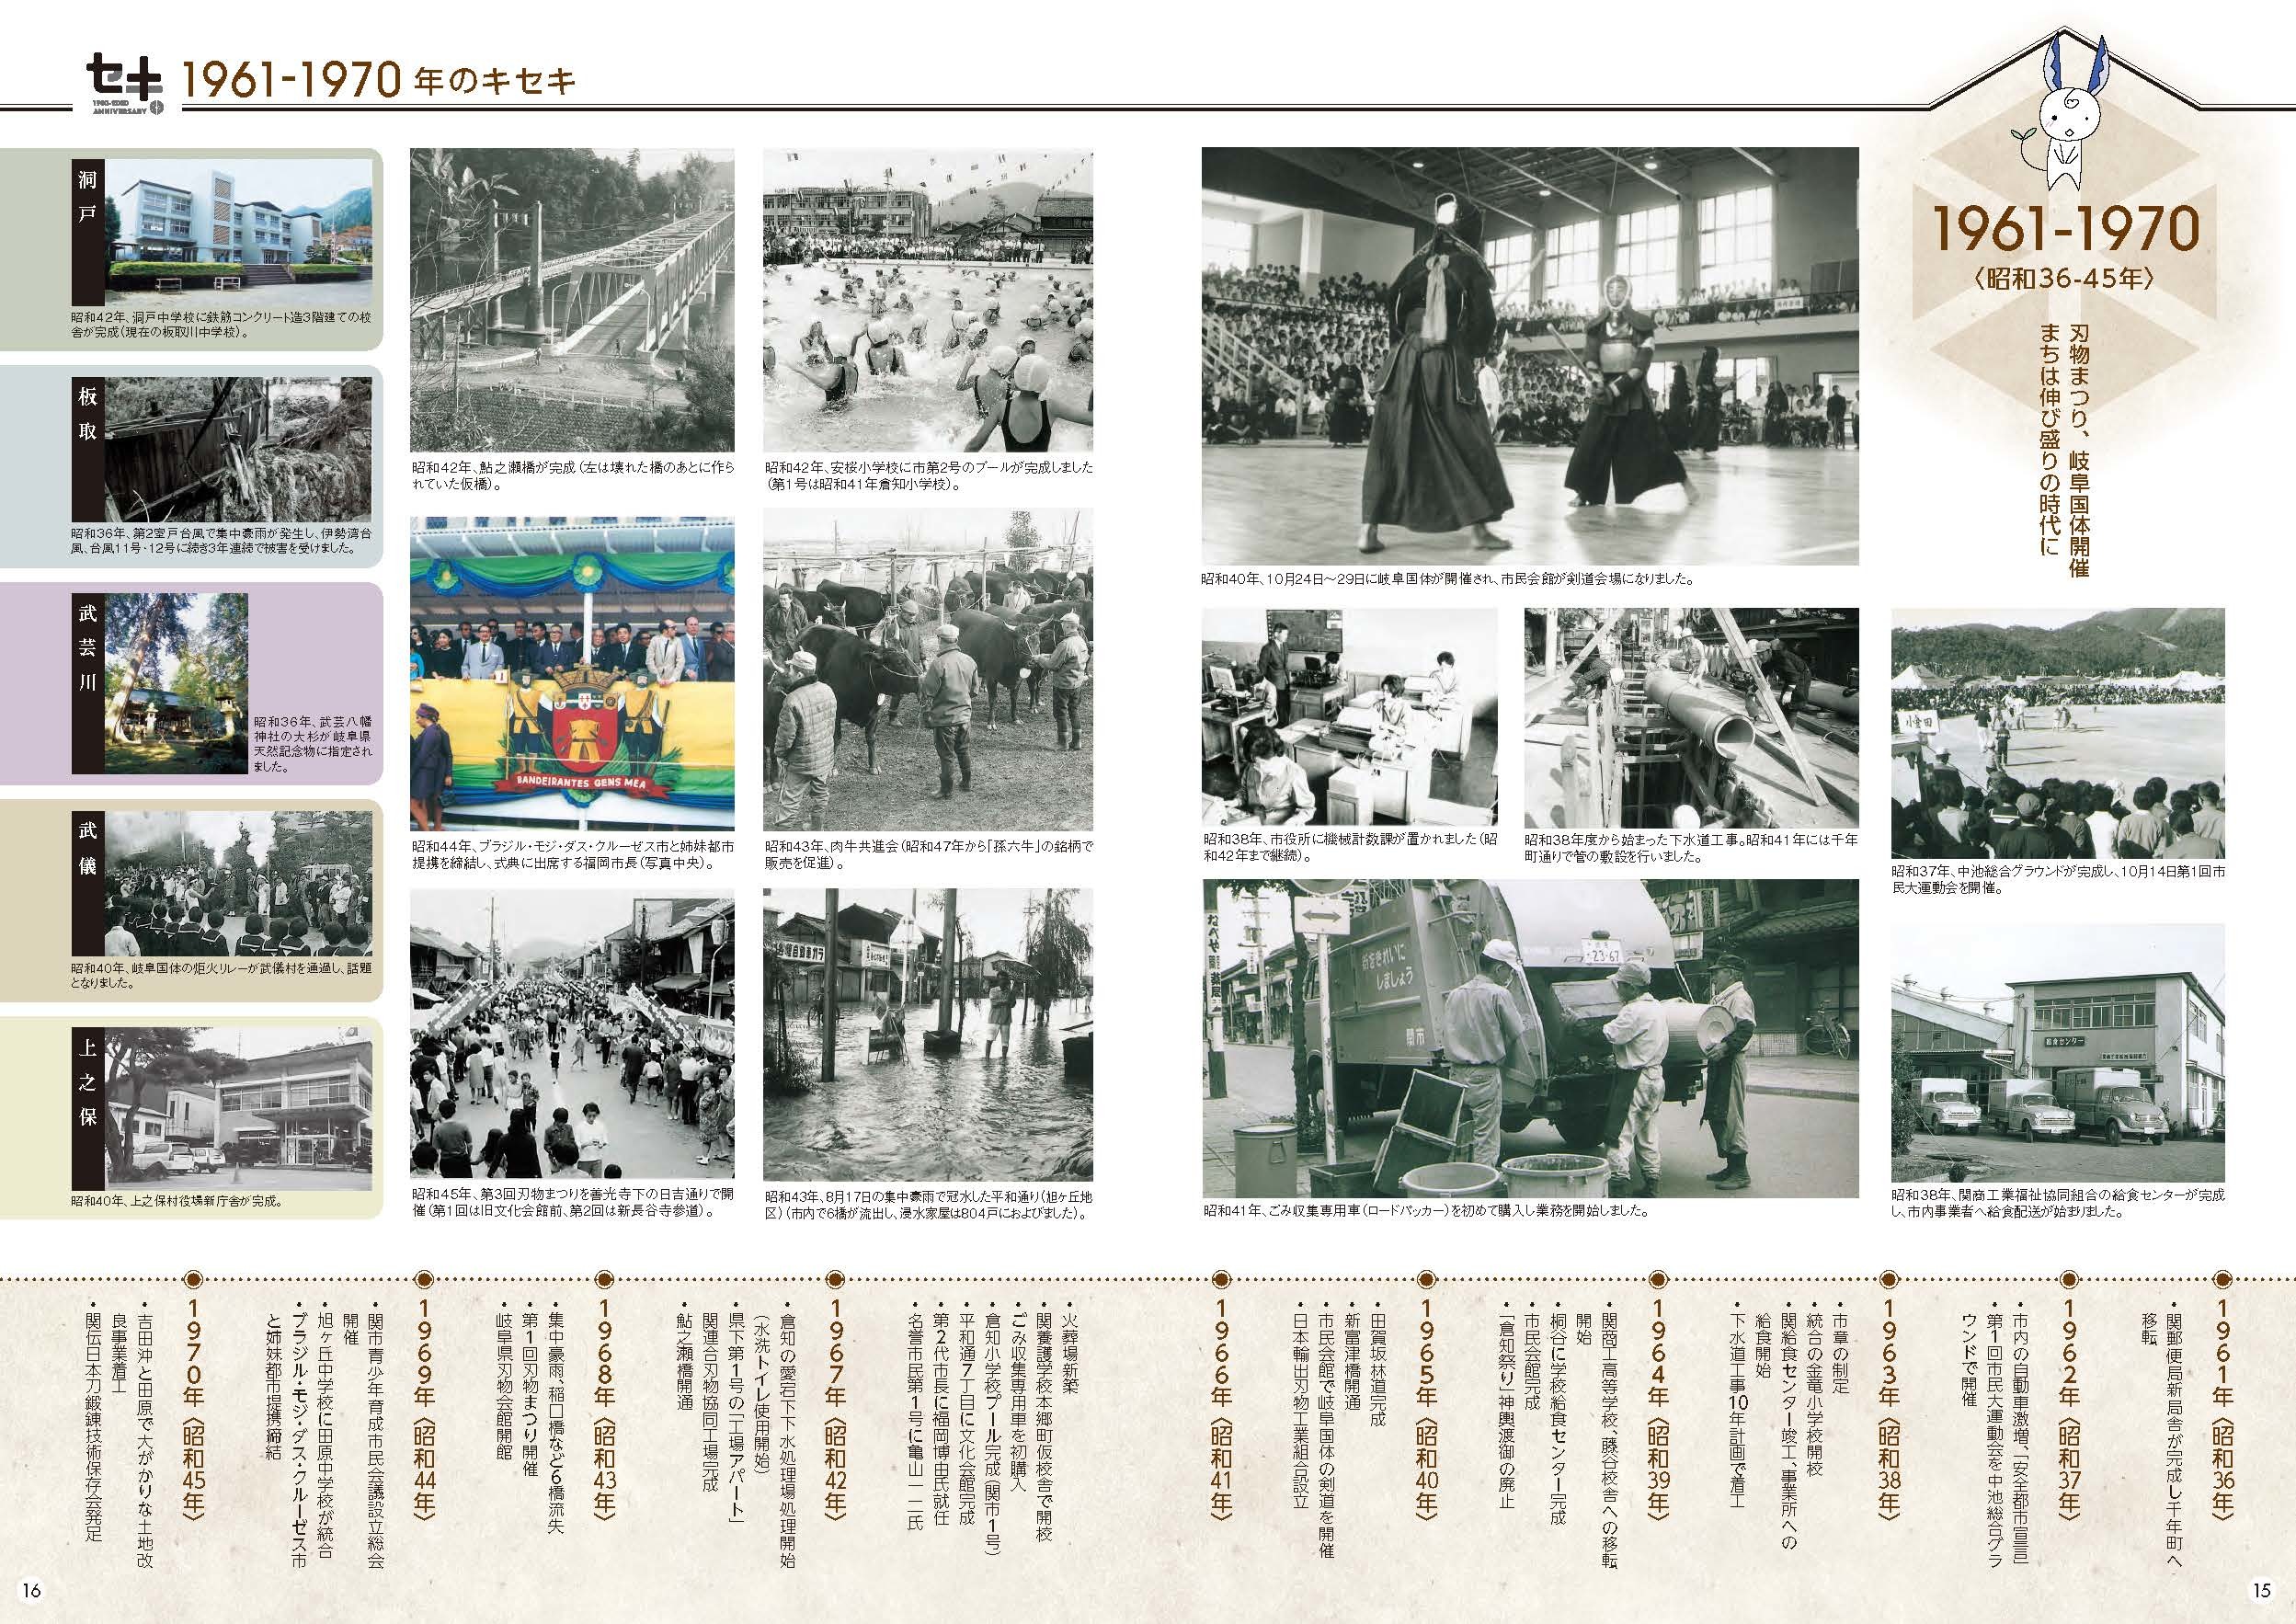 関市70年の歩み(1950-2010年)2